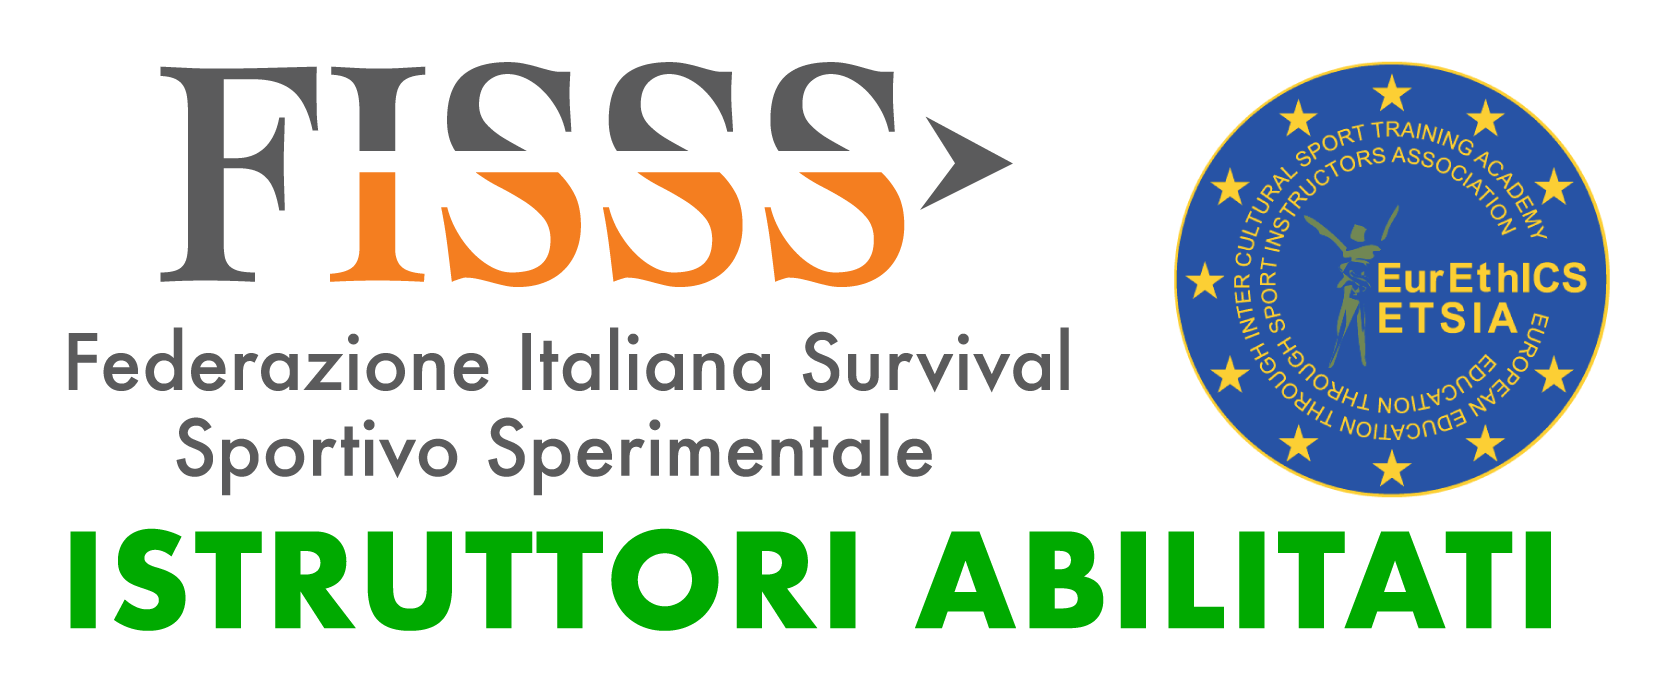 FISSS - Federazione Italiana Survival Sportiva e Sperimentale